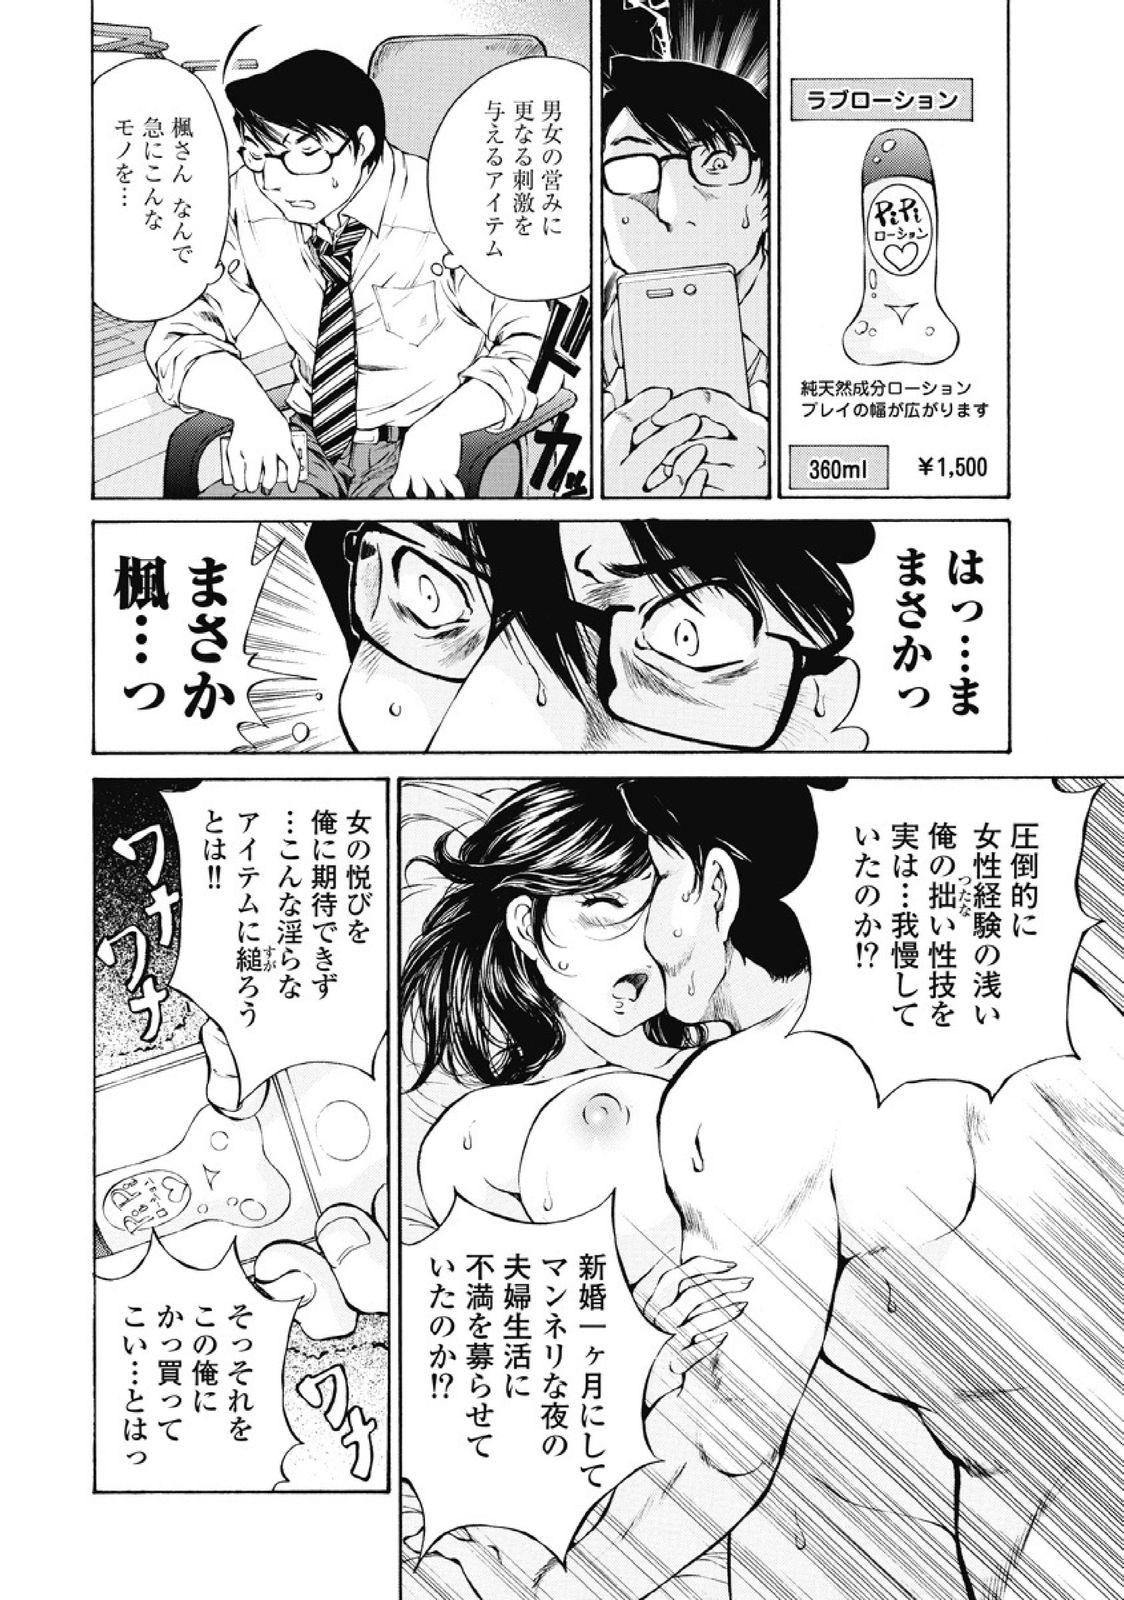 Body Koyoi, Tsuma ga. 1 Screaming - Page 9